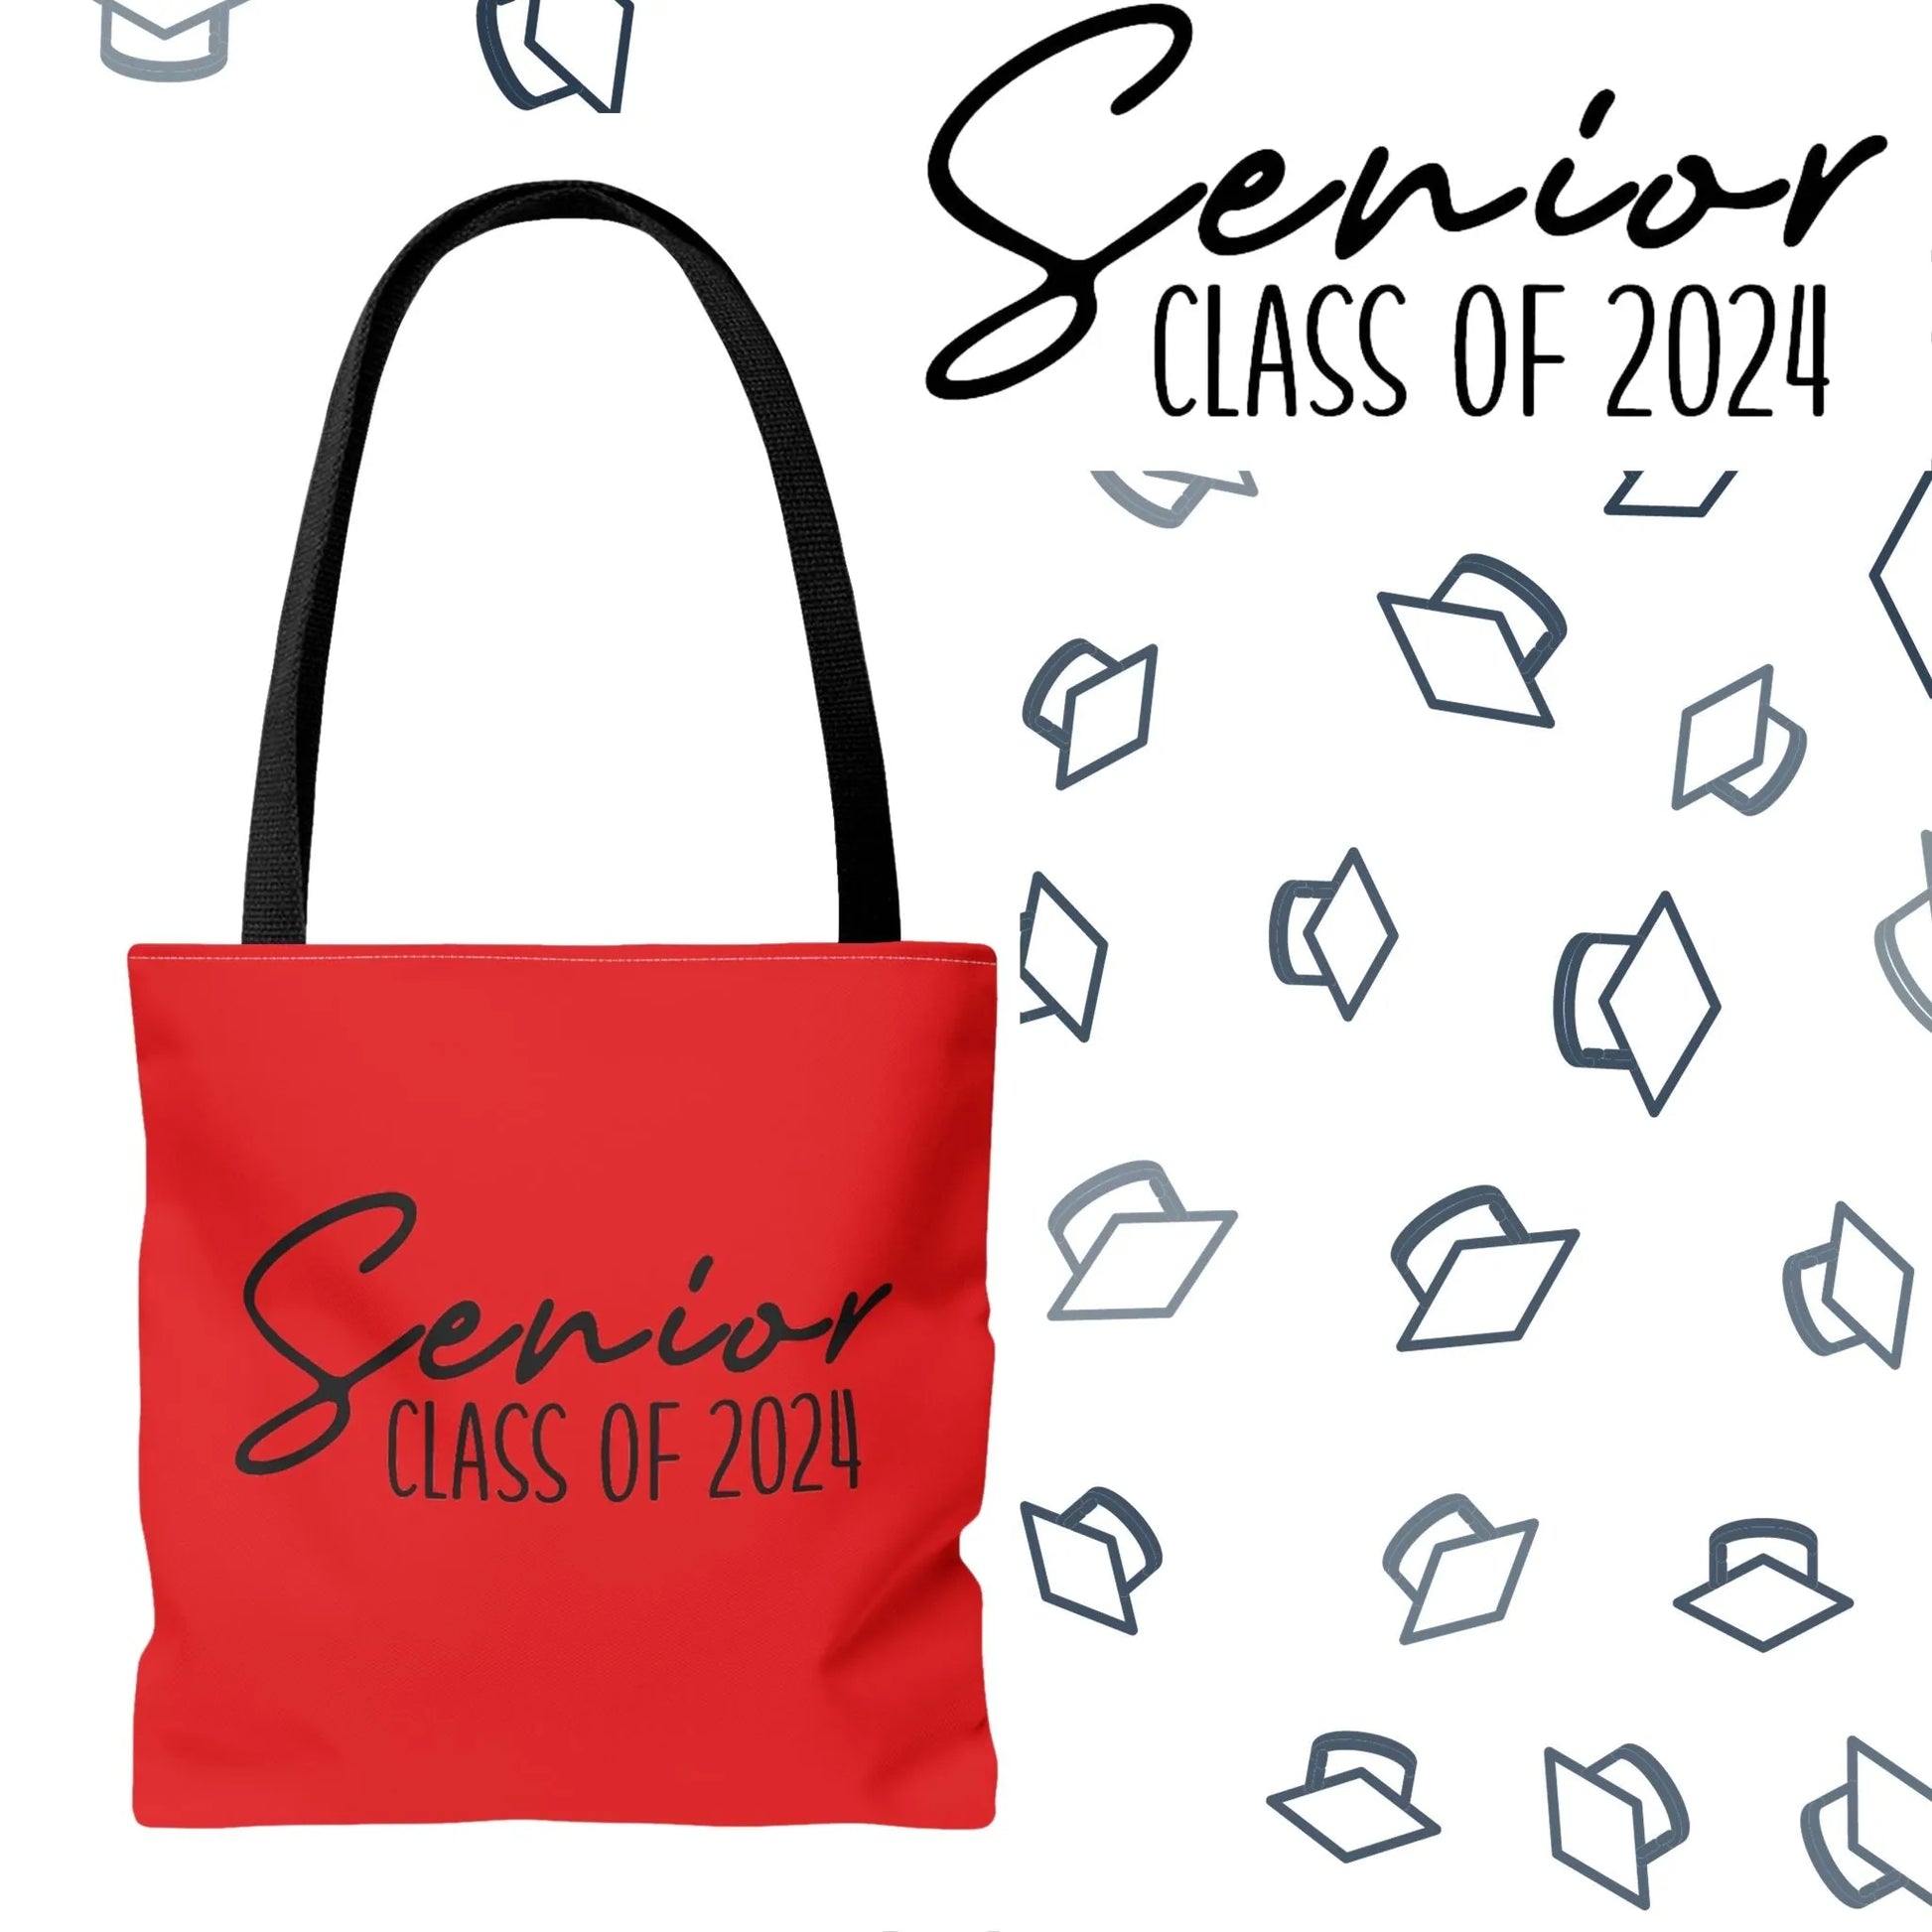 Senior Class of 2024 Tote Bag - Class of 2024 Tote Bag - Senior 2024 Tote Bag red